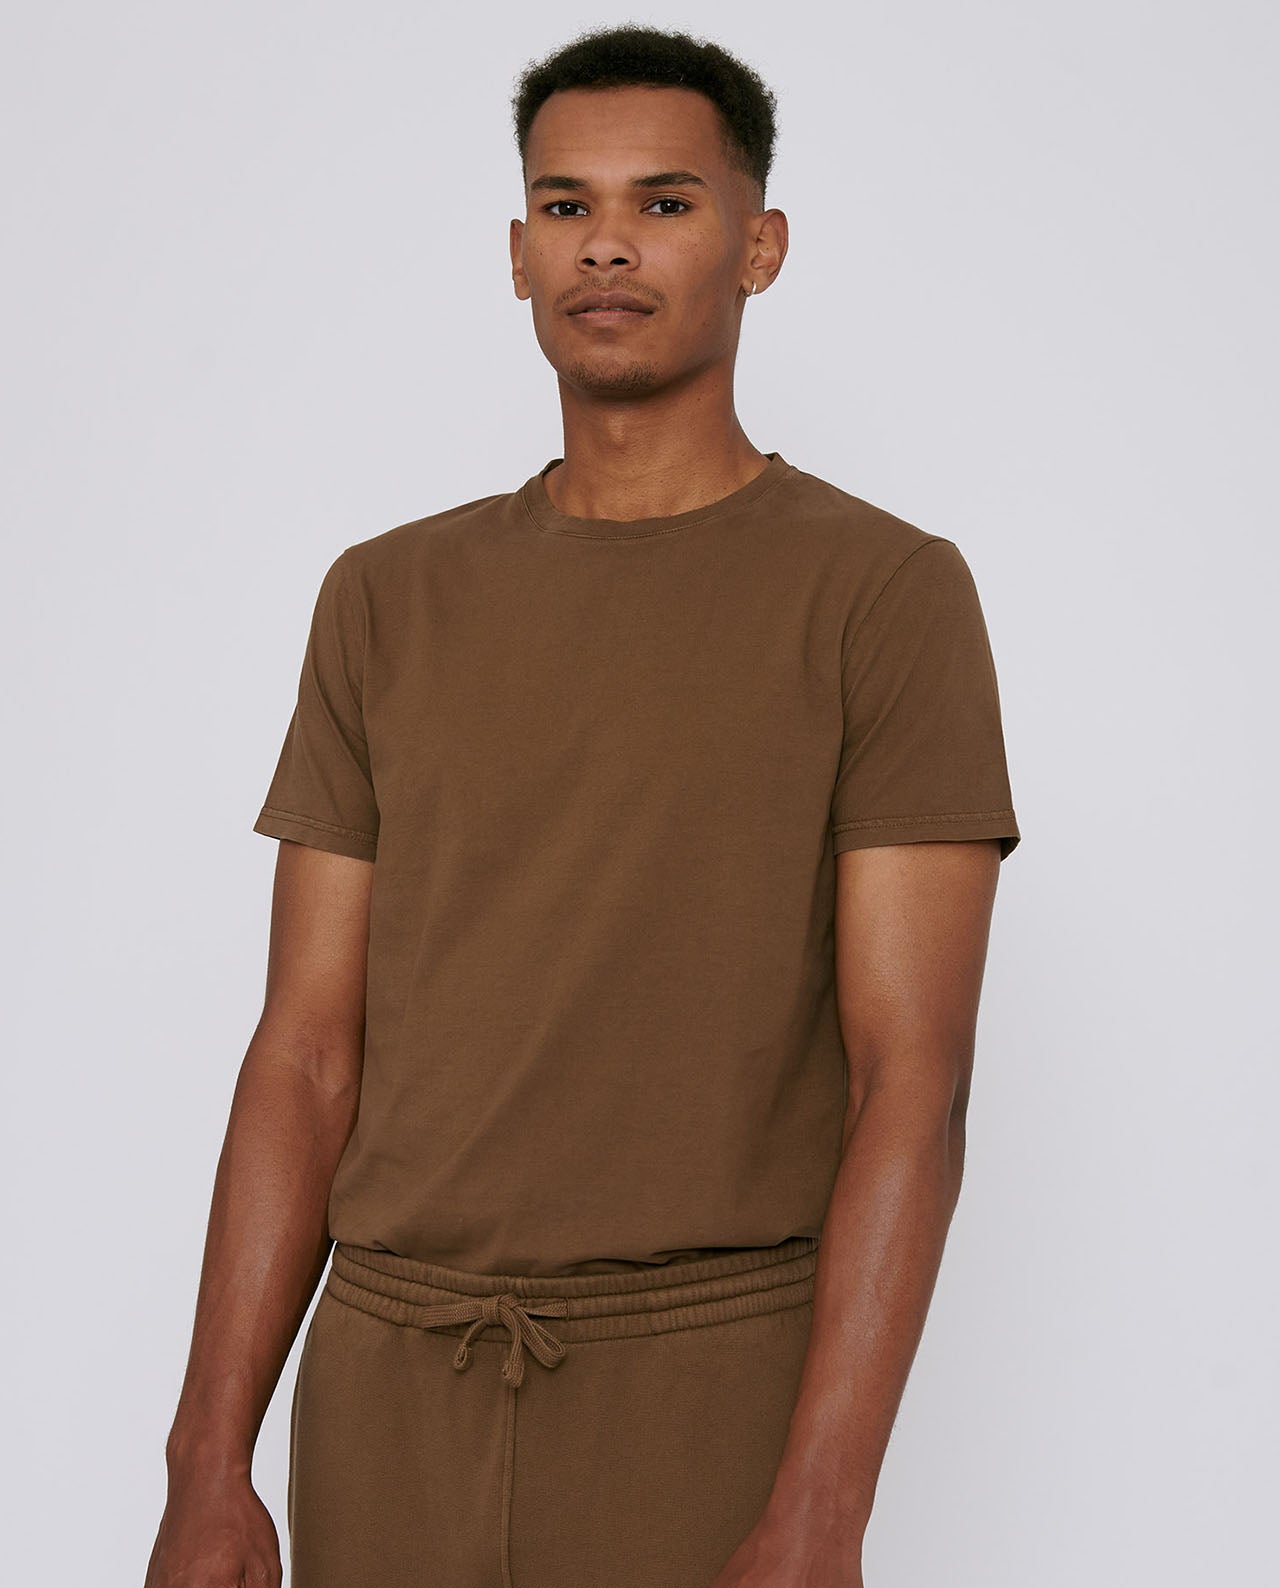 marché commun organic basics t-shirt homme coton biologique terra toned marron